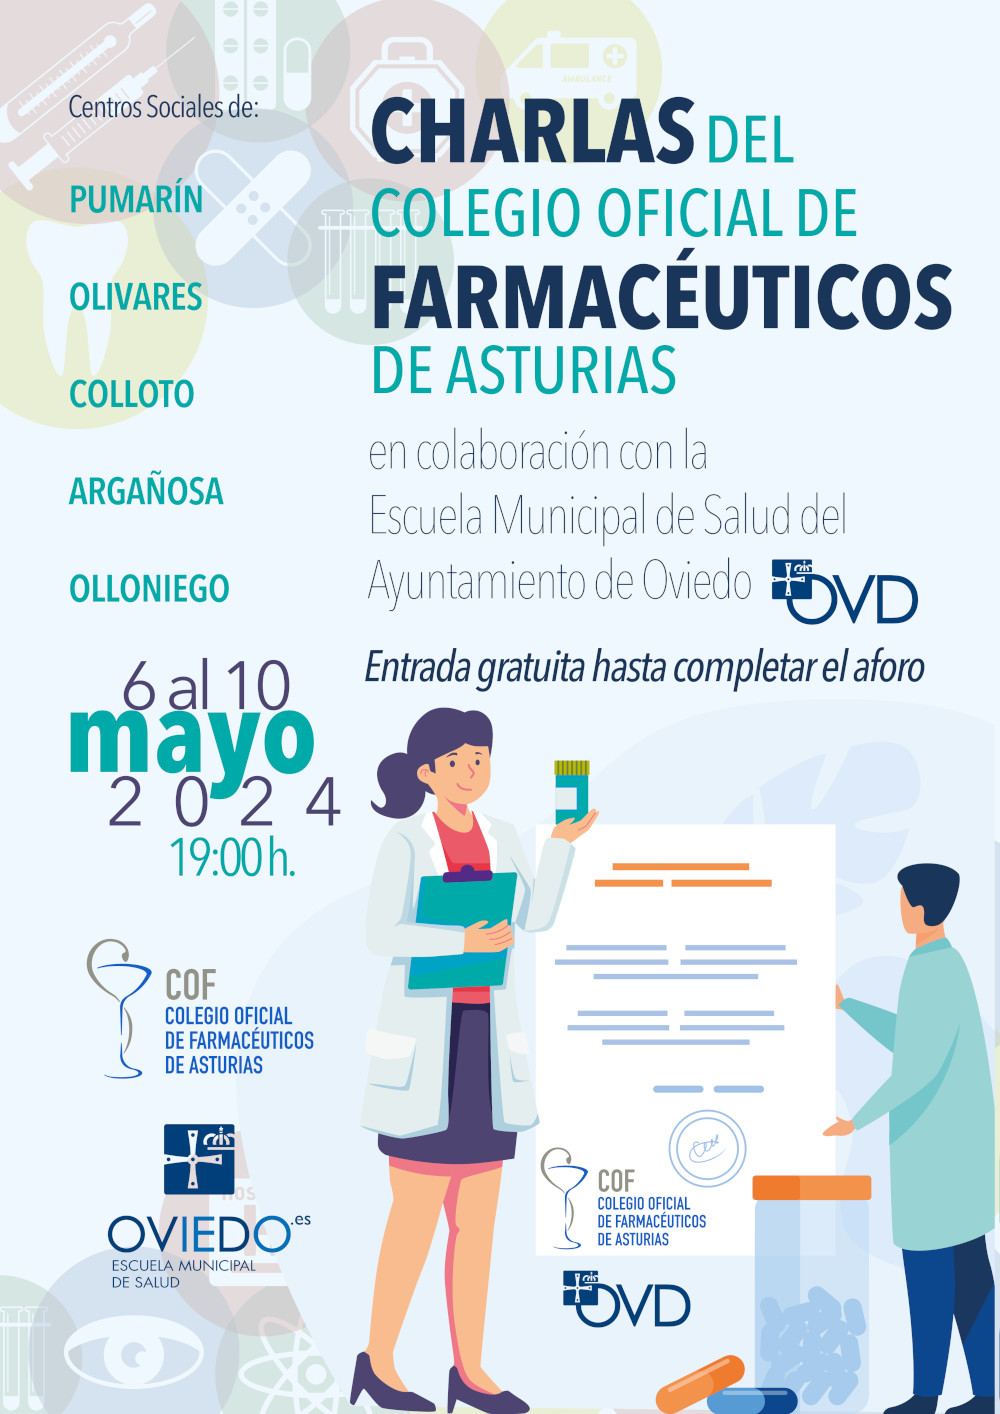 Escuela Municipal de Salud: "Cómo usar bien los medicamentos y evitar errores" (charlas Colegio Oficial de Farmacéuticos de Asturias)